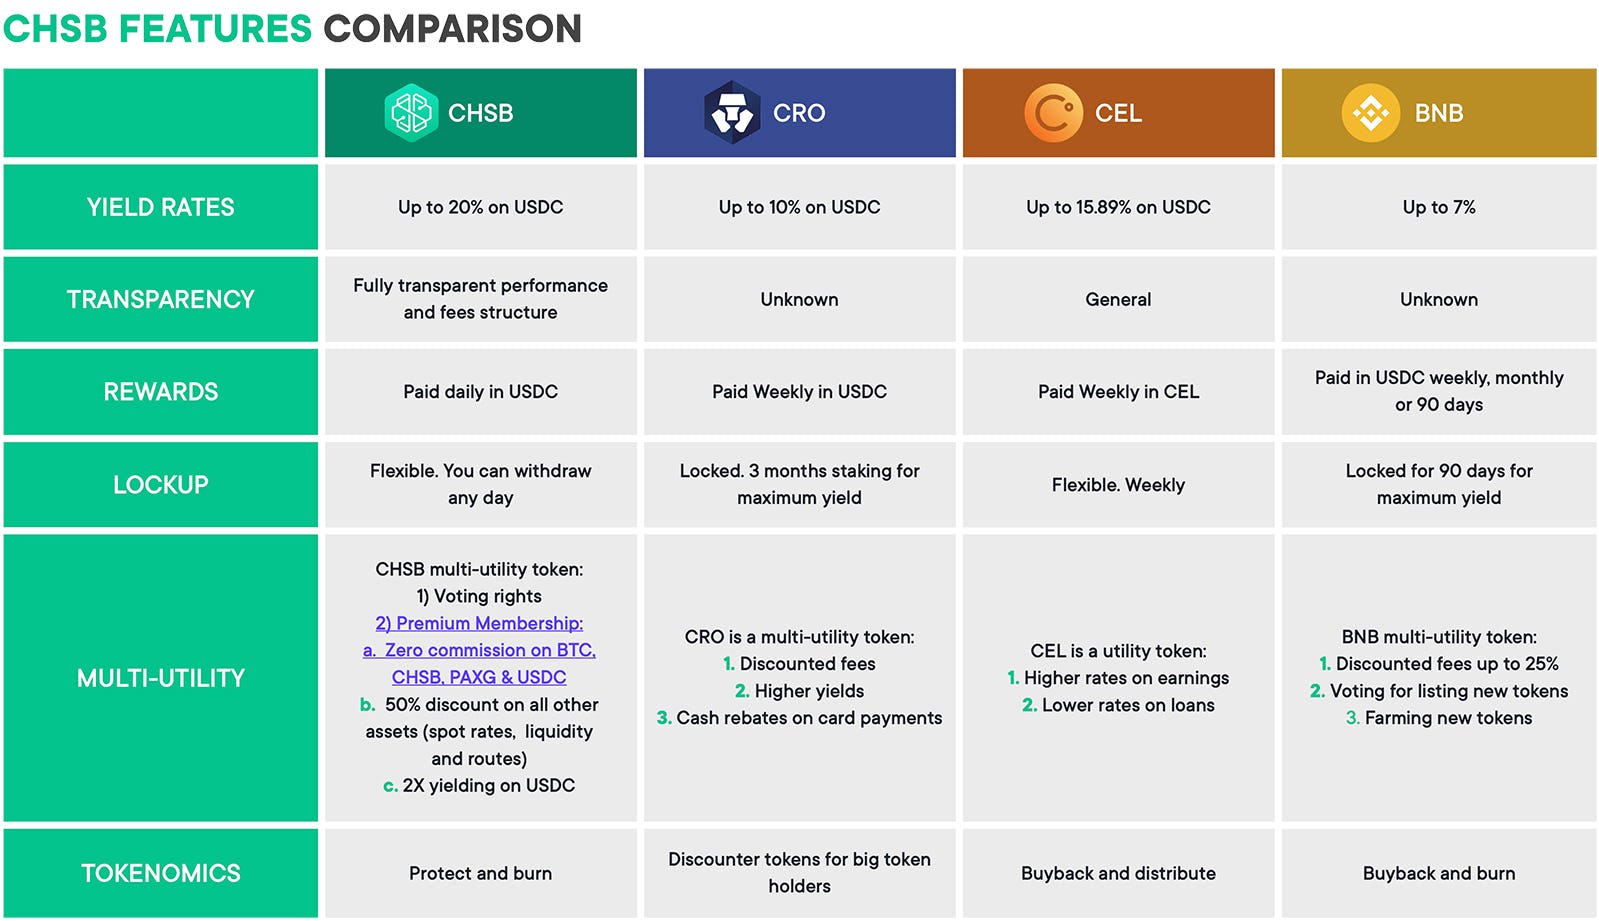 CHSB Features Comparison